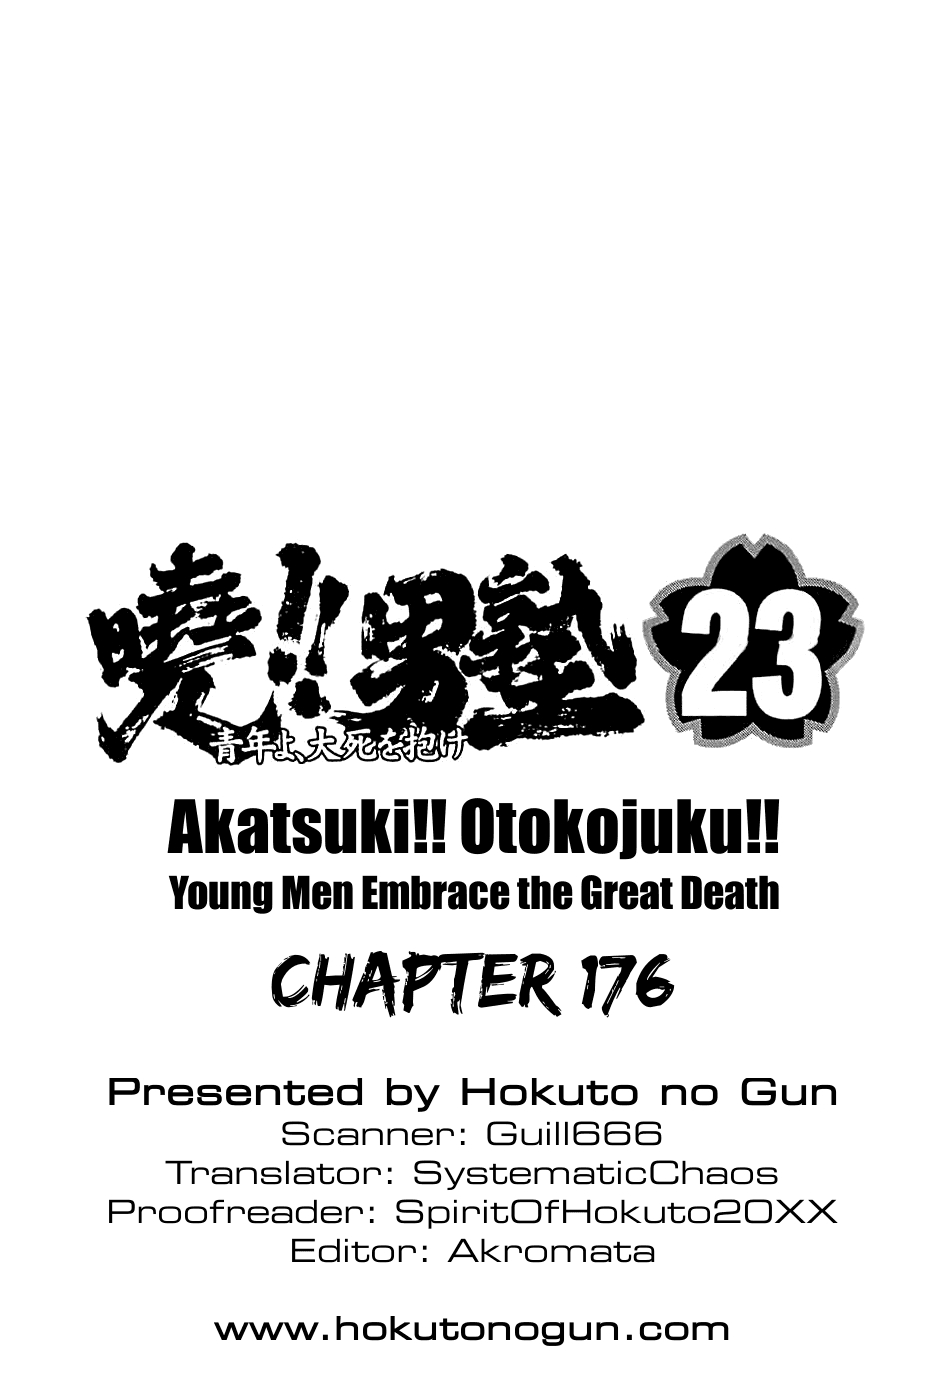 Akatsuki!! Otokojuku Seinen yo, Taishi wo Idake Vol. 23 Ch. 176 This is a Man's Battle!!